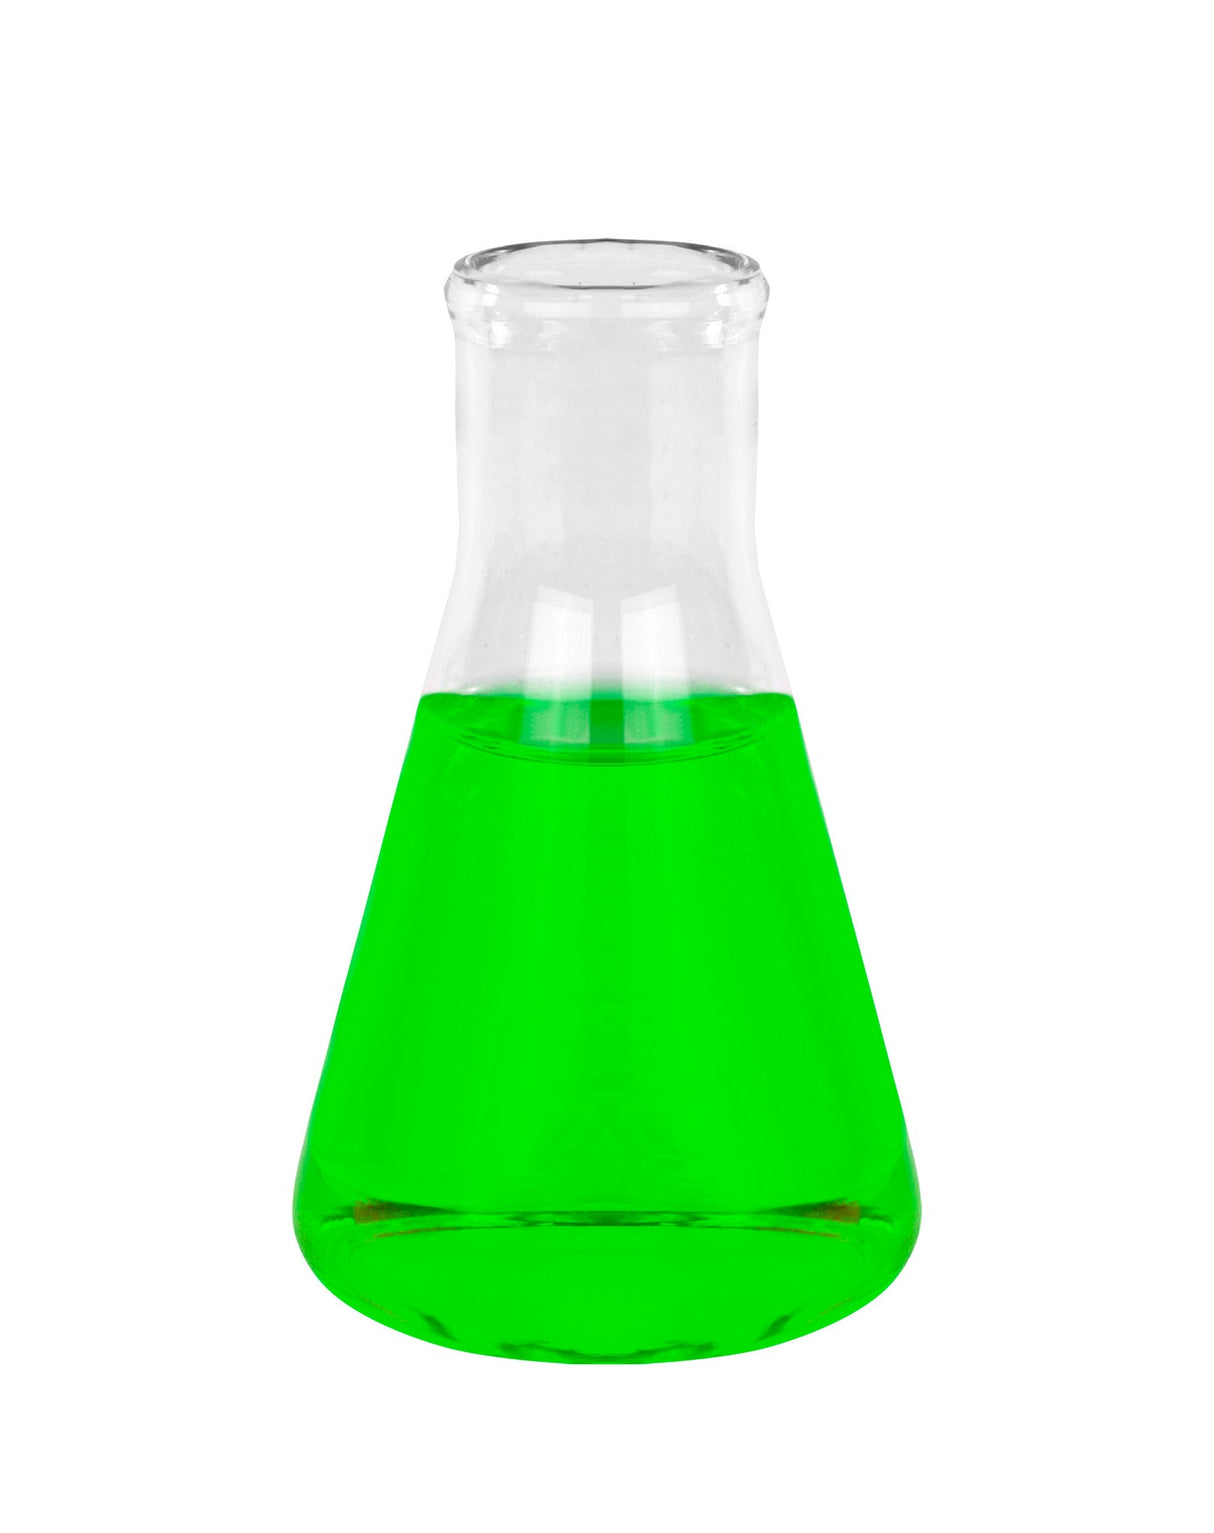 Bridge-It® S-Adenosyl Methionine (SAM) Fluorescence Assay Kit, 96-well